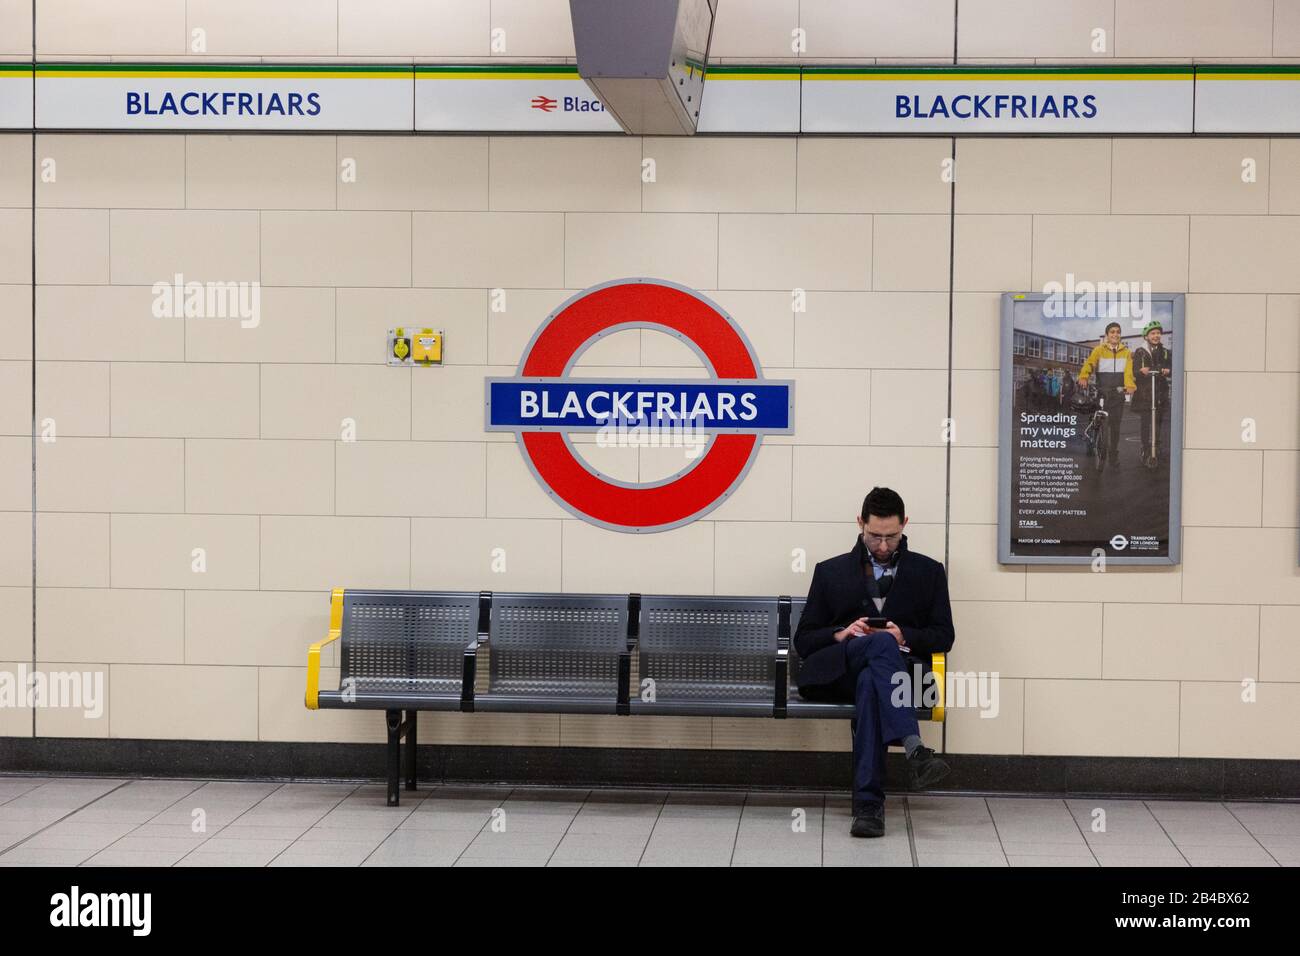 Ein Mann, der auf einer Bank auf der Plattform der Blackfriars U-Bahn-Station sitzt, oder Blackfriars London Underground Station, Blackfriars London UK Stockfoto